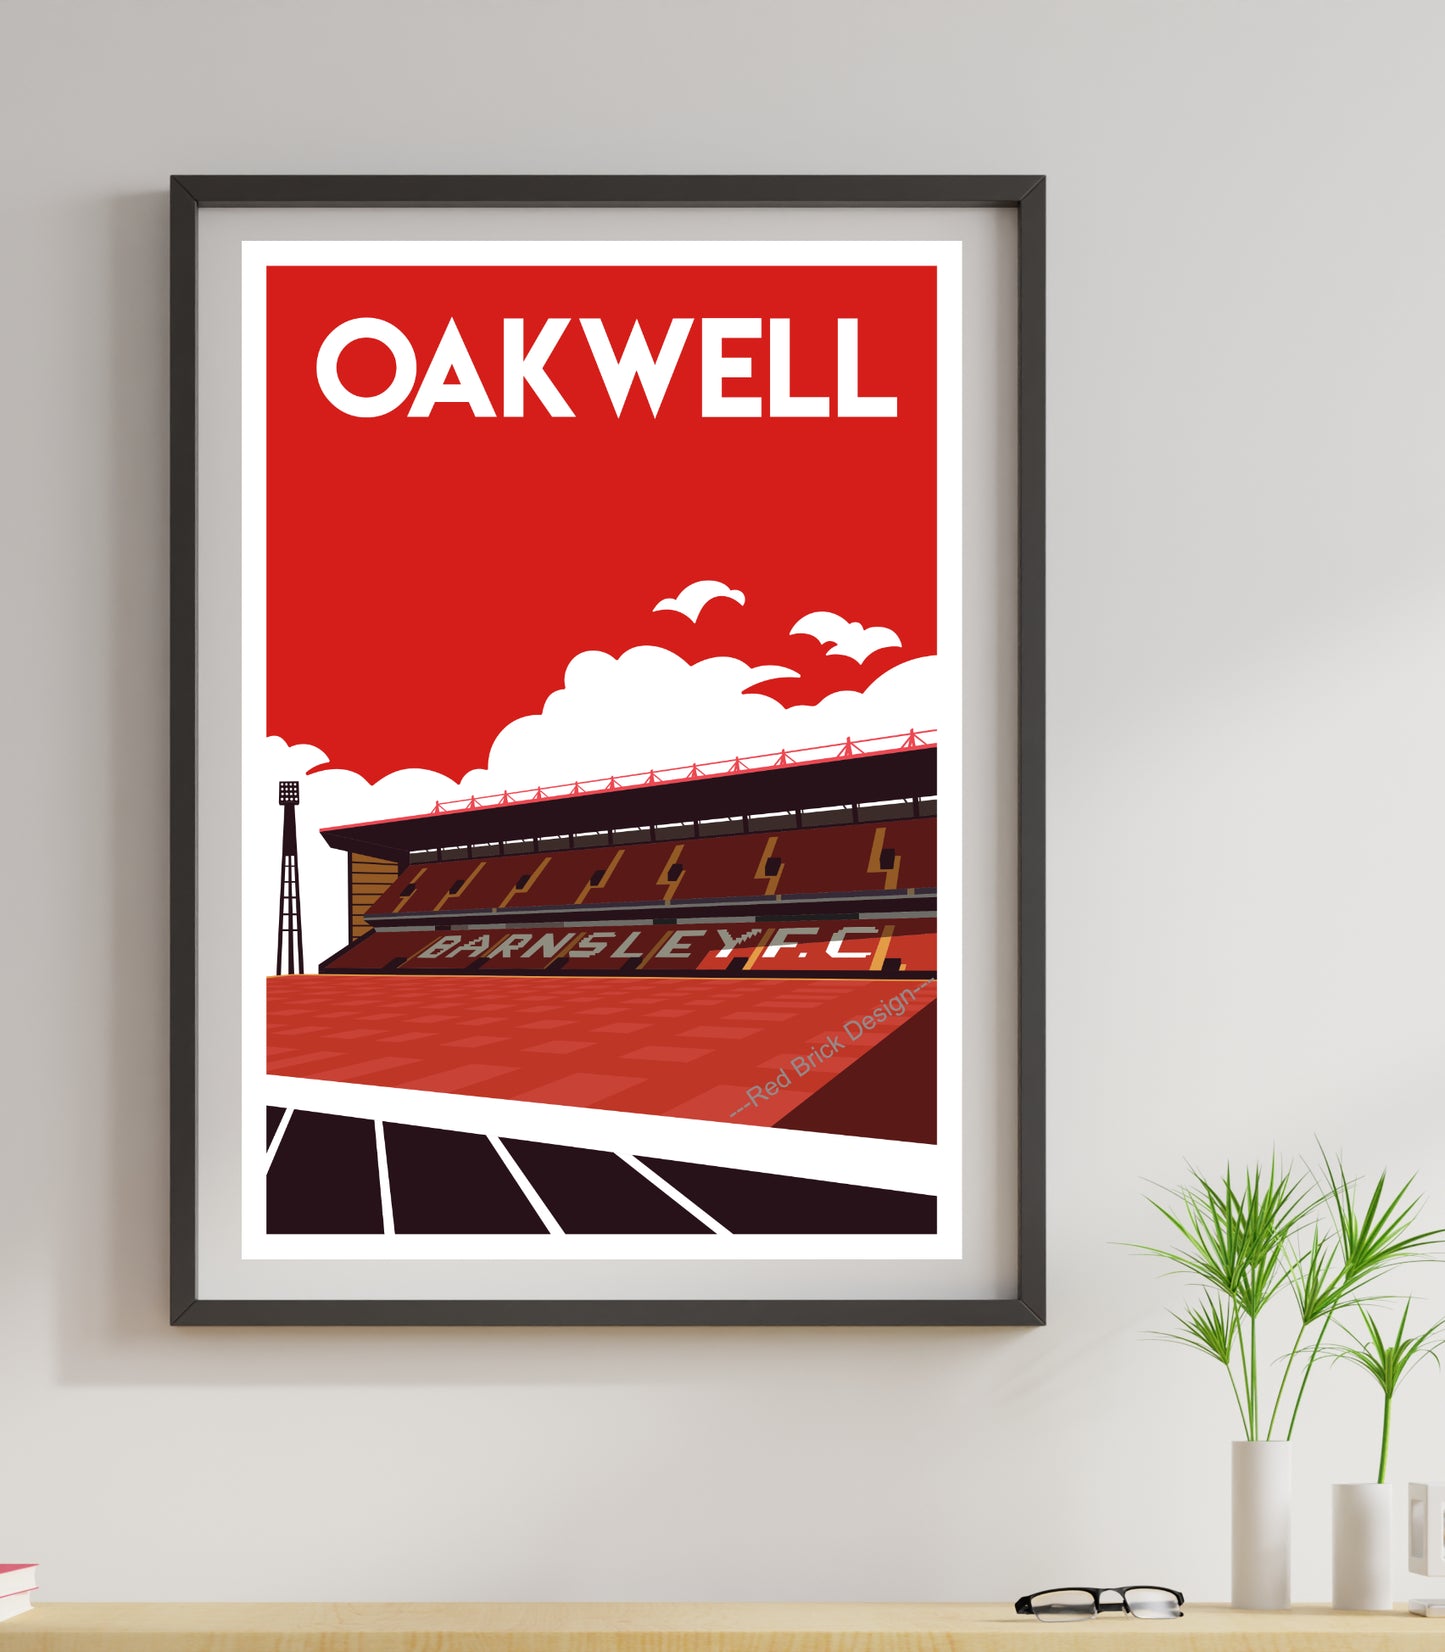 Barnsley FC Oakwell Retro Design Art Print Poster artwork